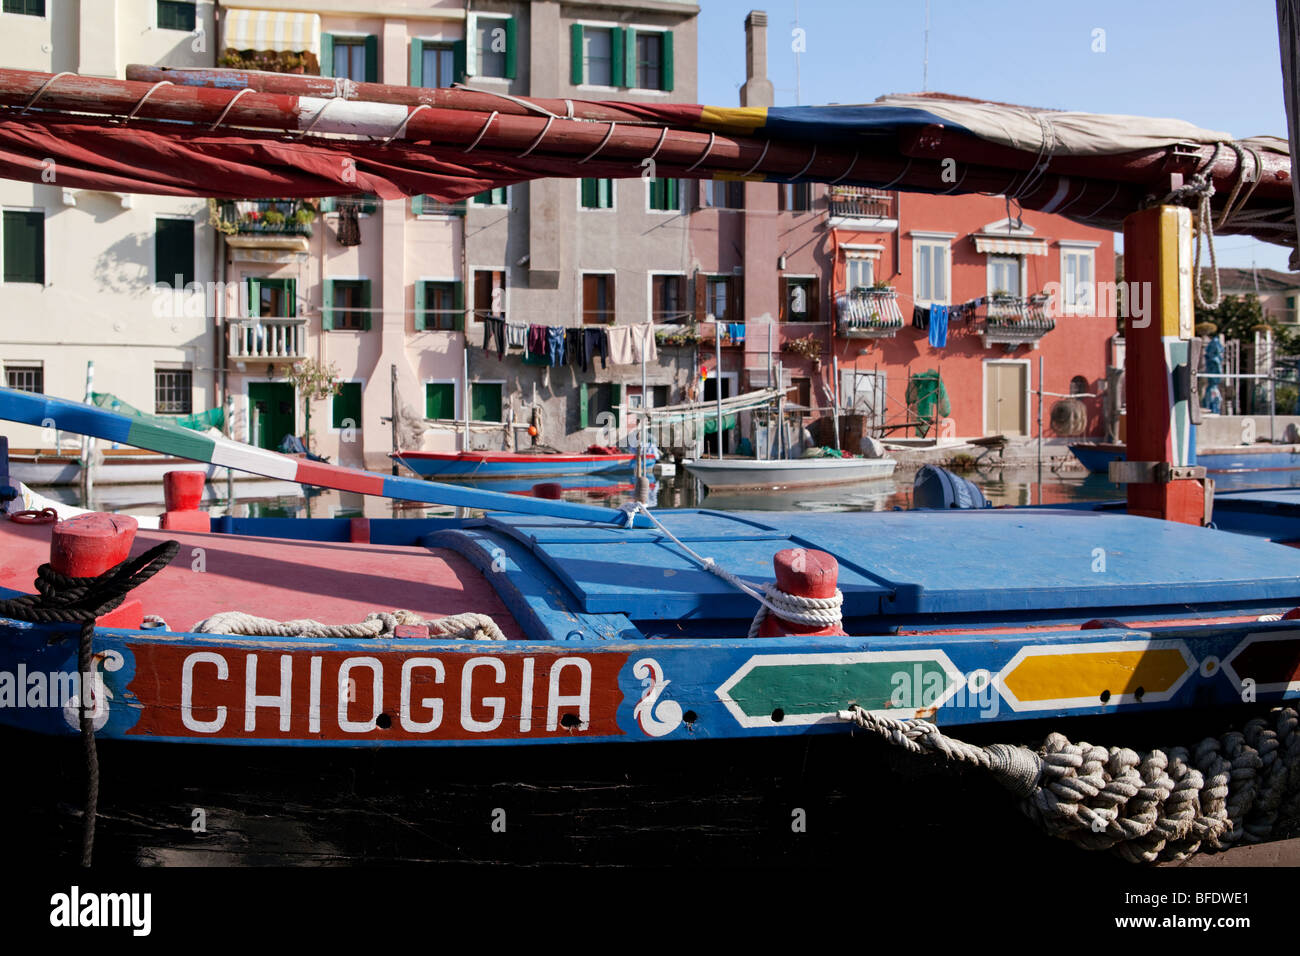 Village de pêcheurs historique de Chioggia avec des vieux bateaux de pêche. Veneto, Italie Banque D'Images